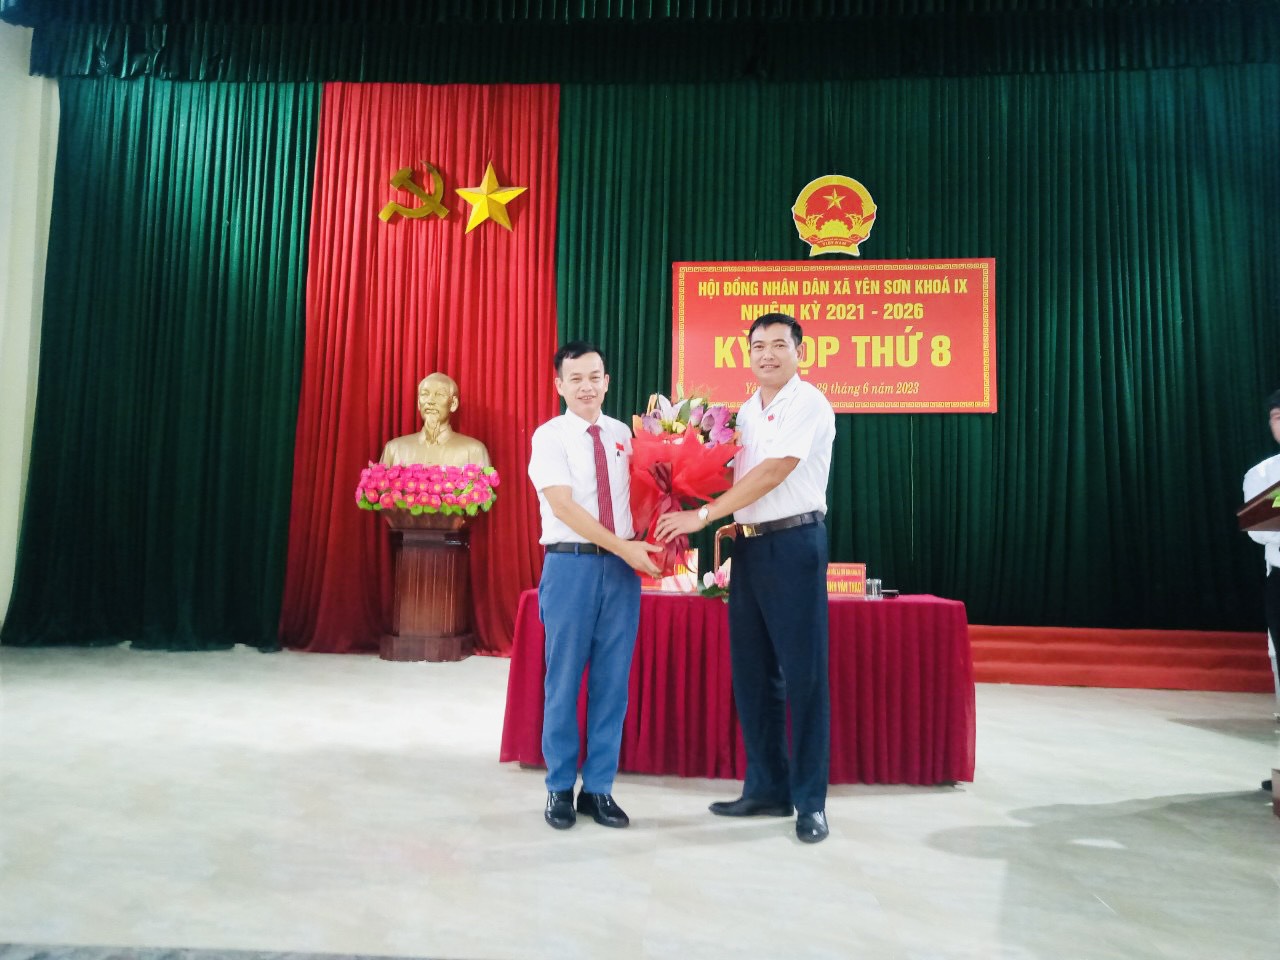 Kỳ họp thứ 8 HĐND xã Yên Sơn khóa IX, nhiệm kỳ 2021 - 2026  